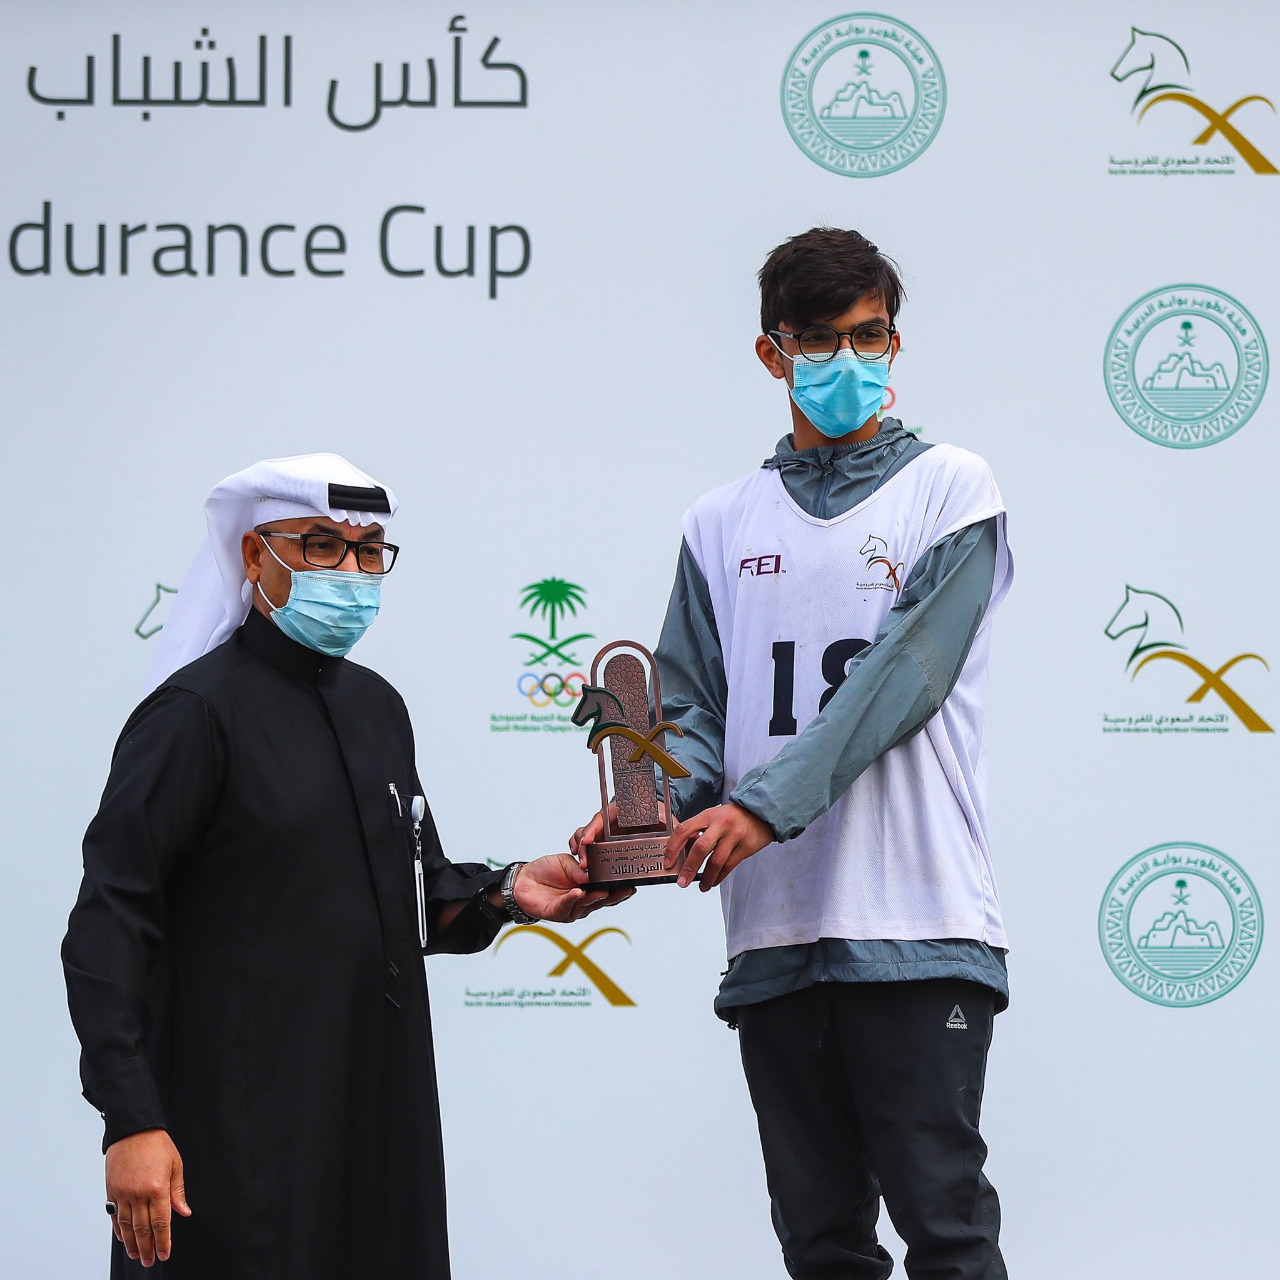 بالصور والأسماء.. أبطال سباق كأس الشباب والناشئين للقدرة والتحمل بمزرعة الخالدية السعودية